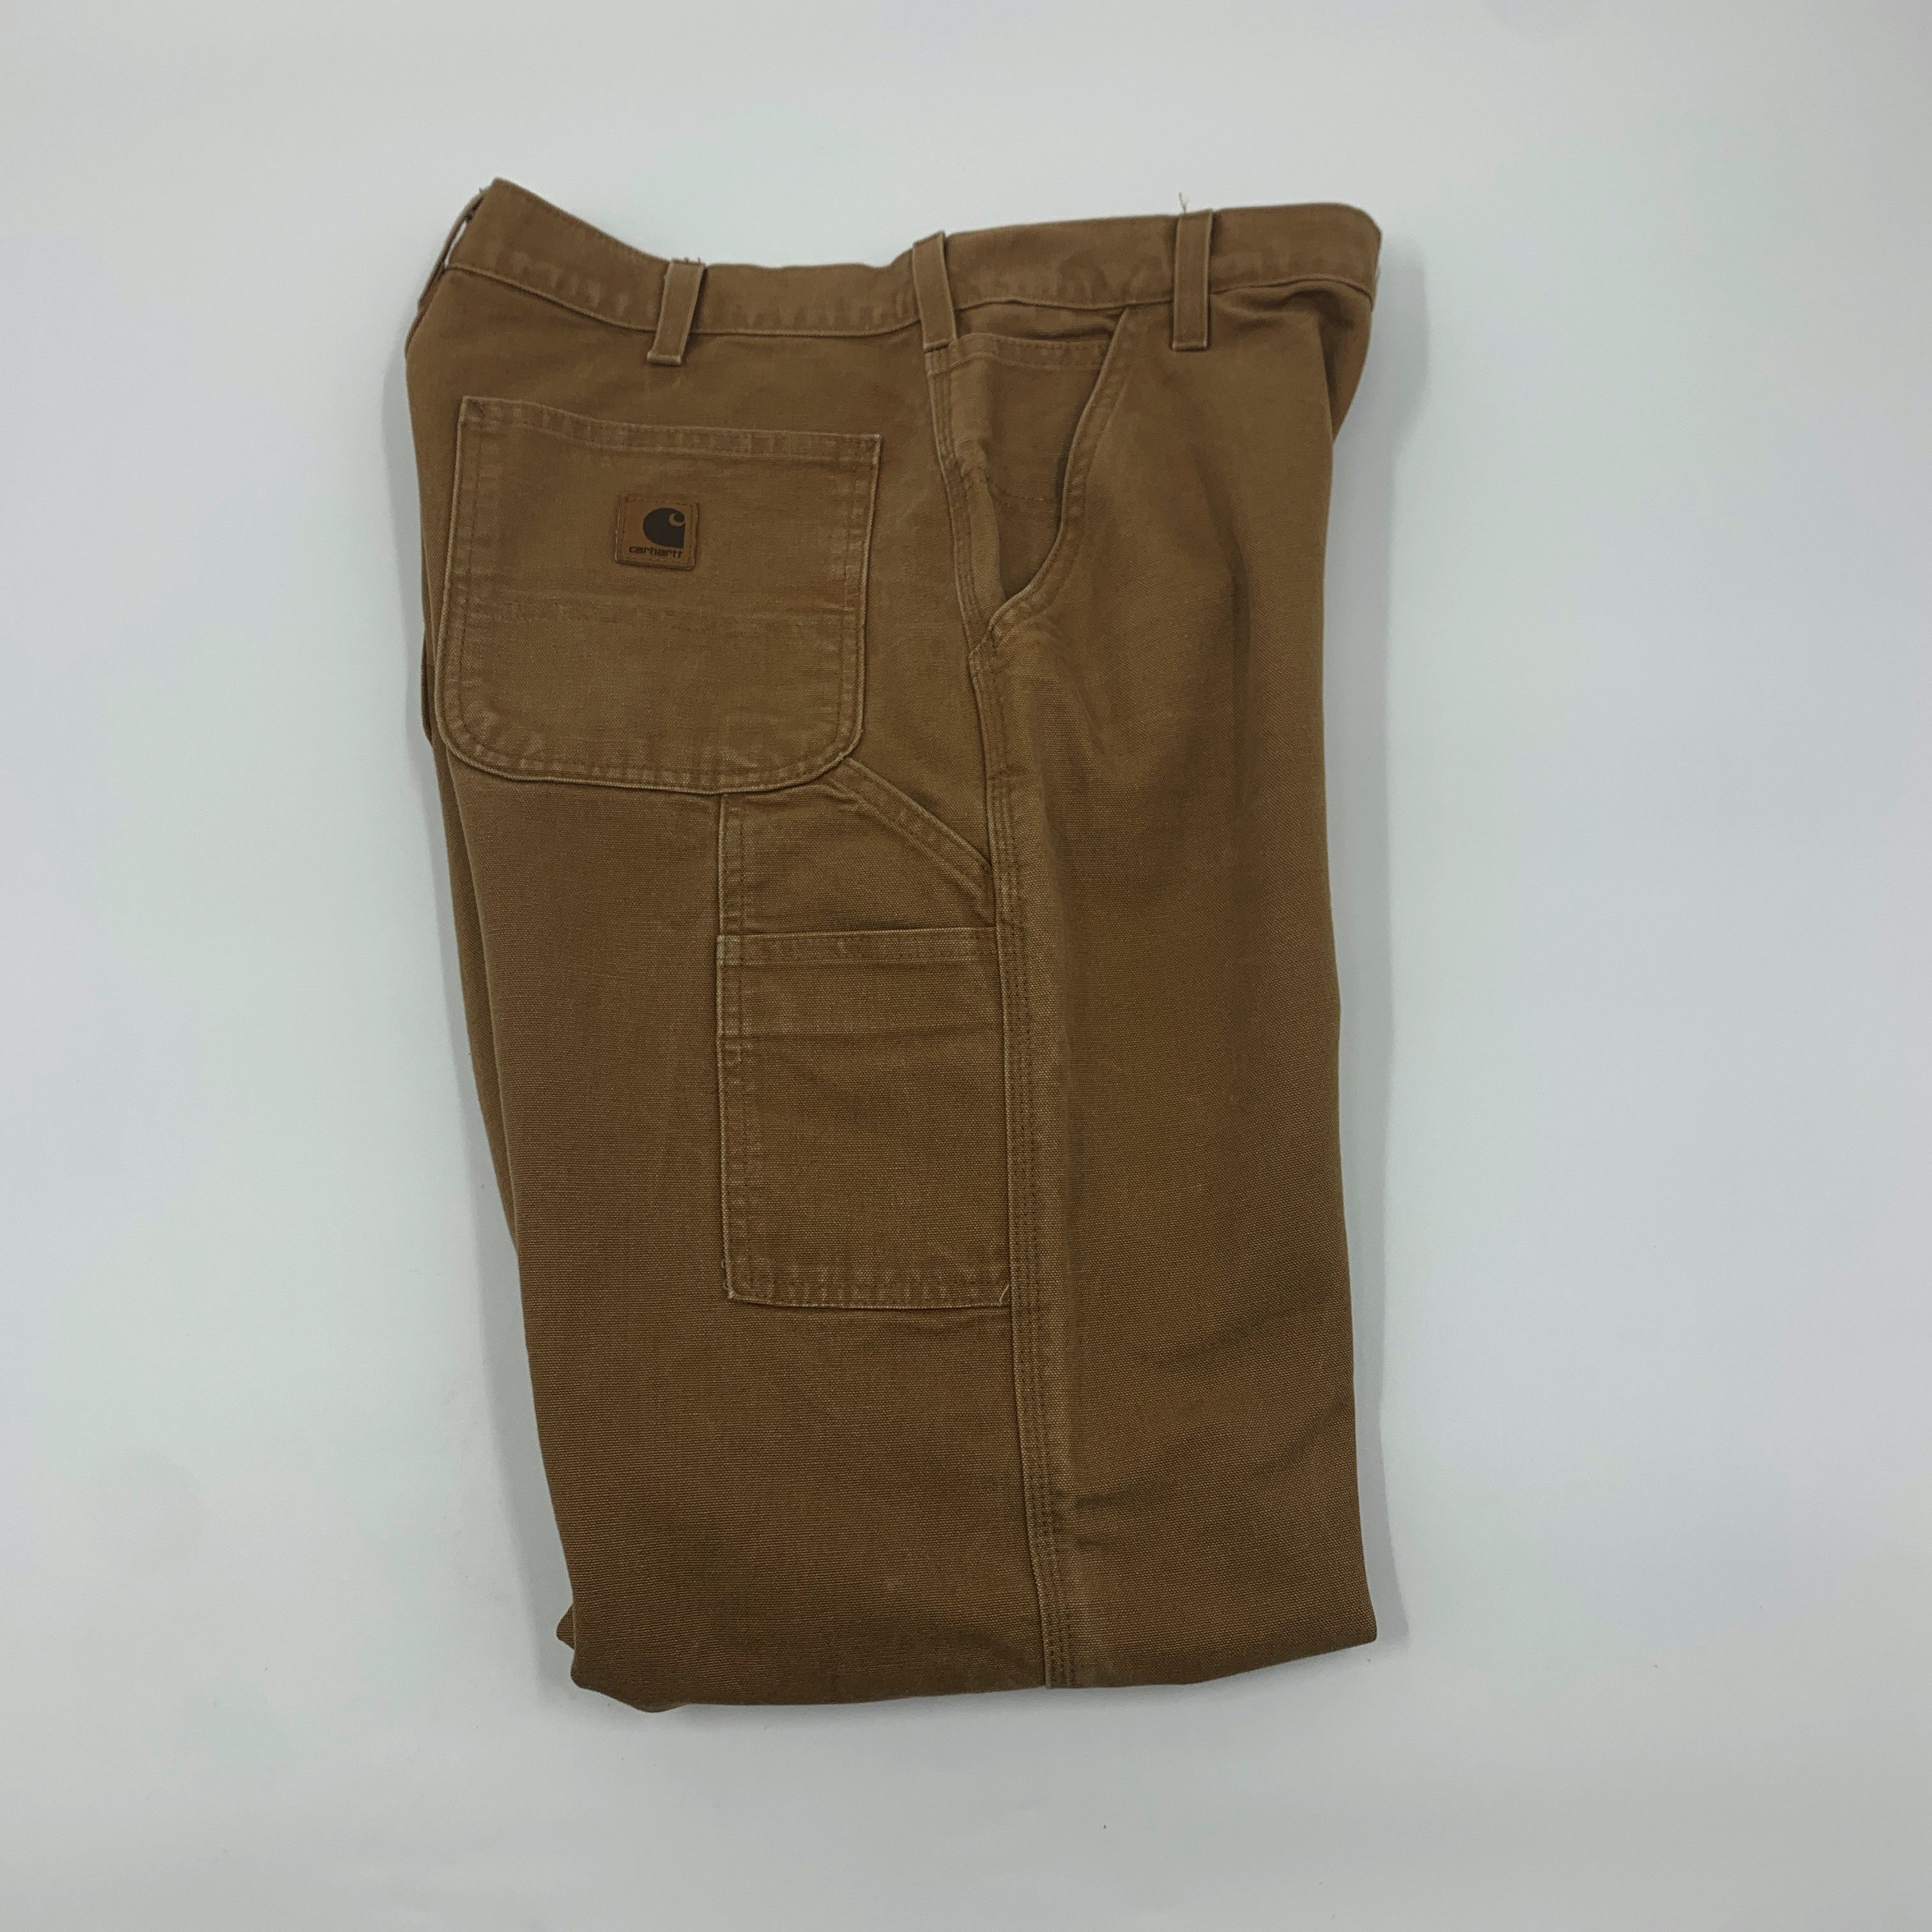 Vintage Carhartt B11 BRN pants size 33x34 Size US 33 - 6 Thumbnail